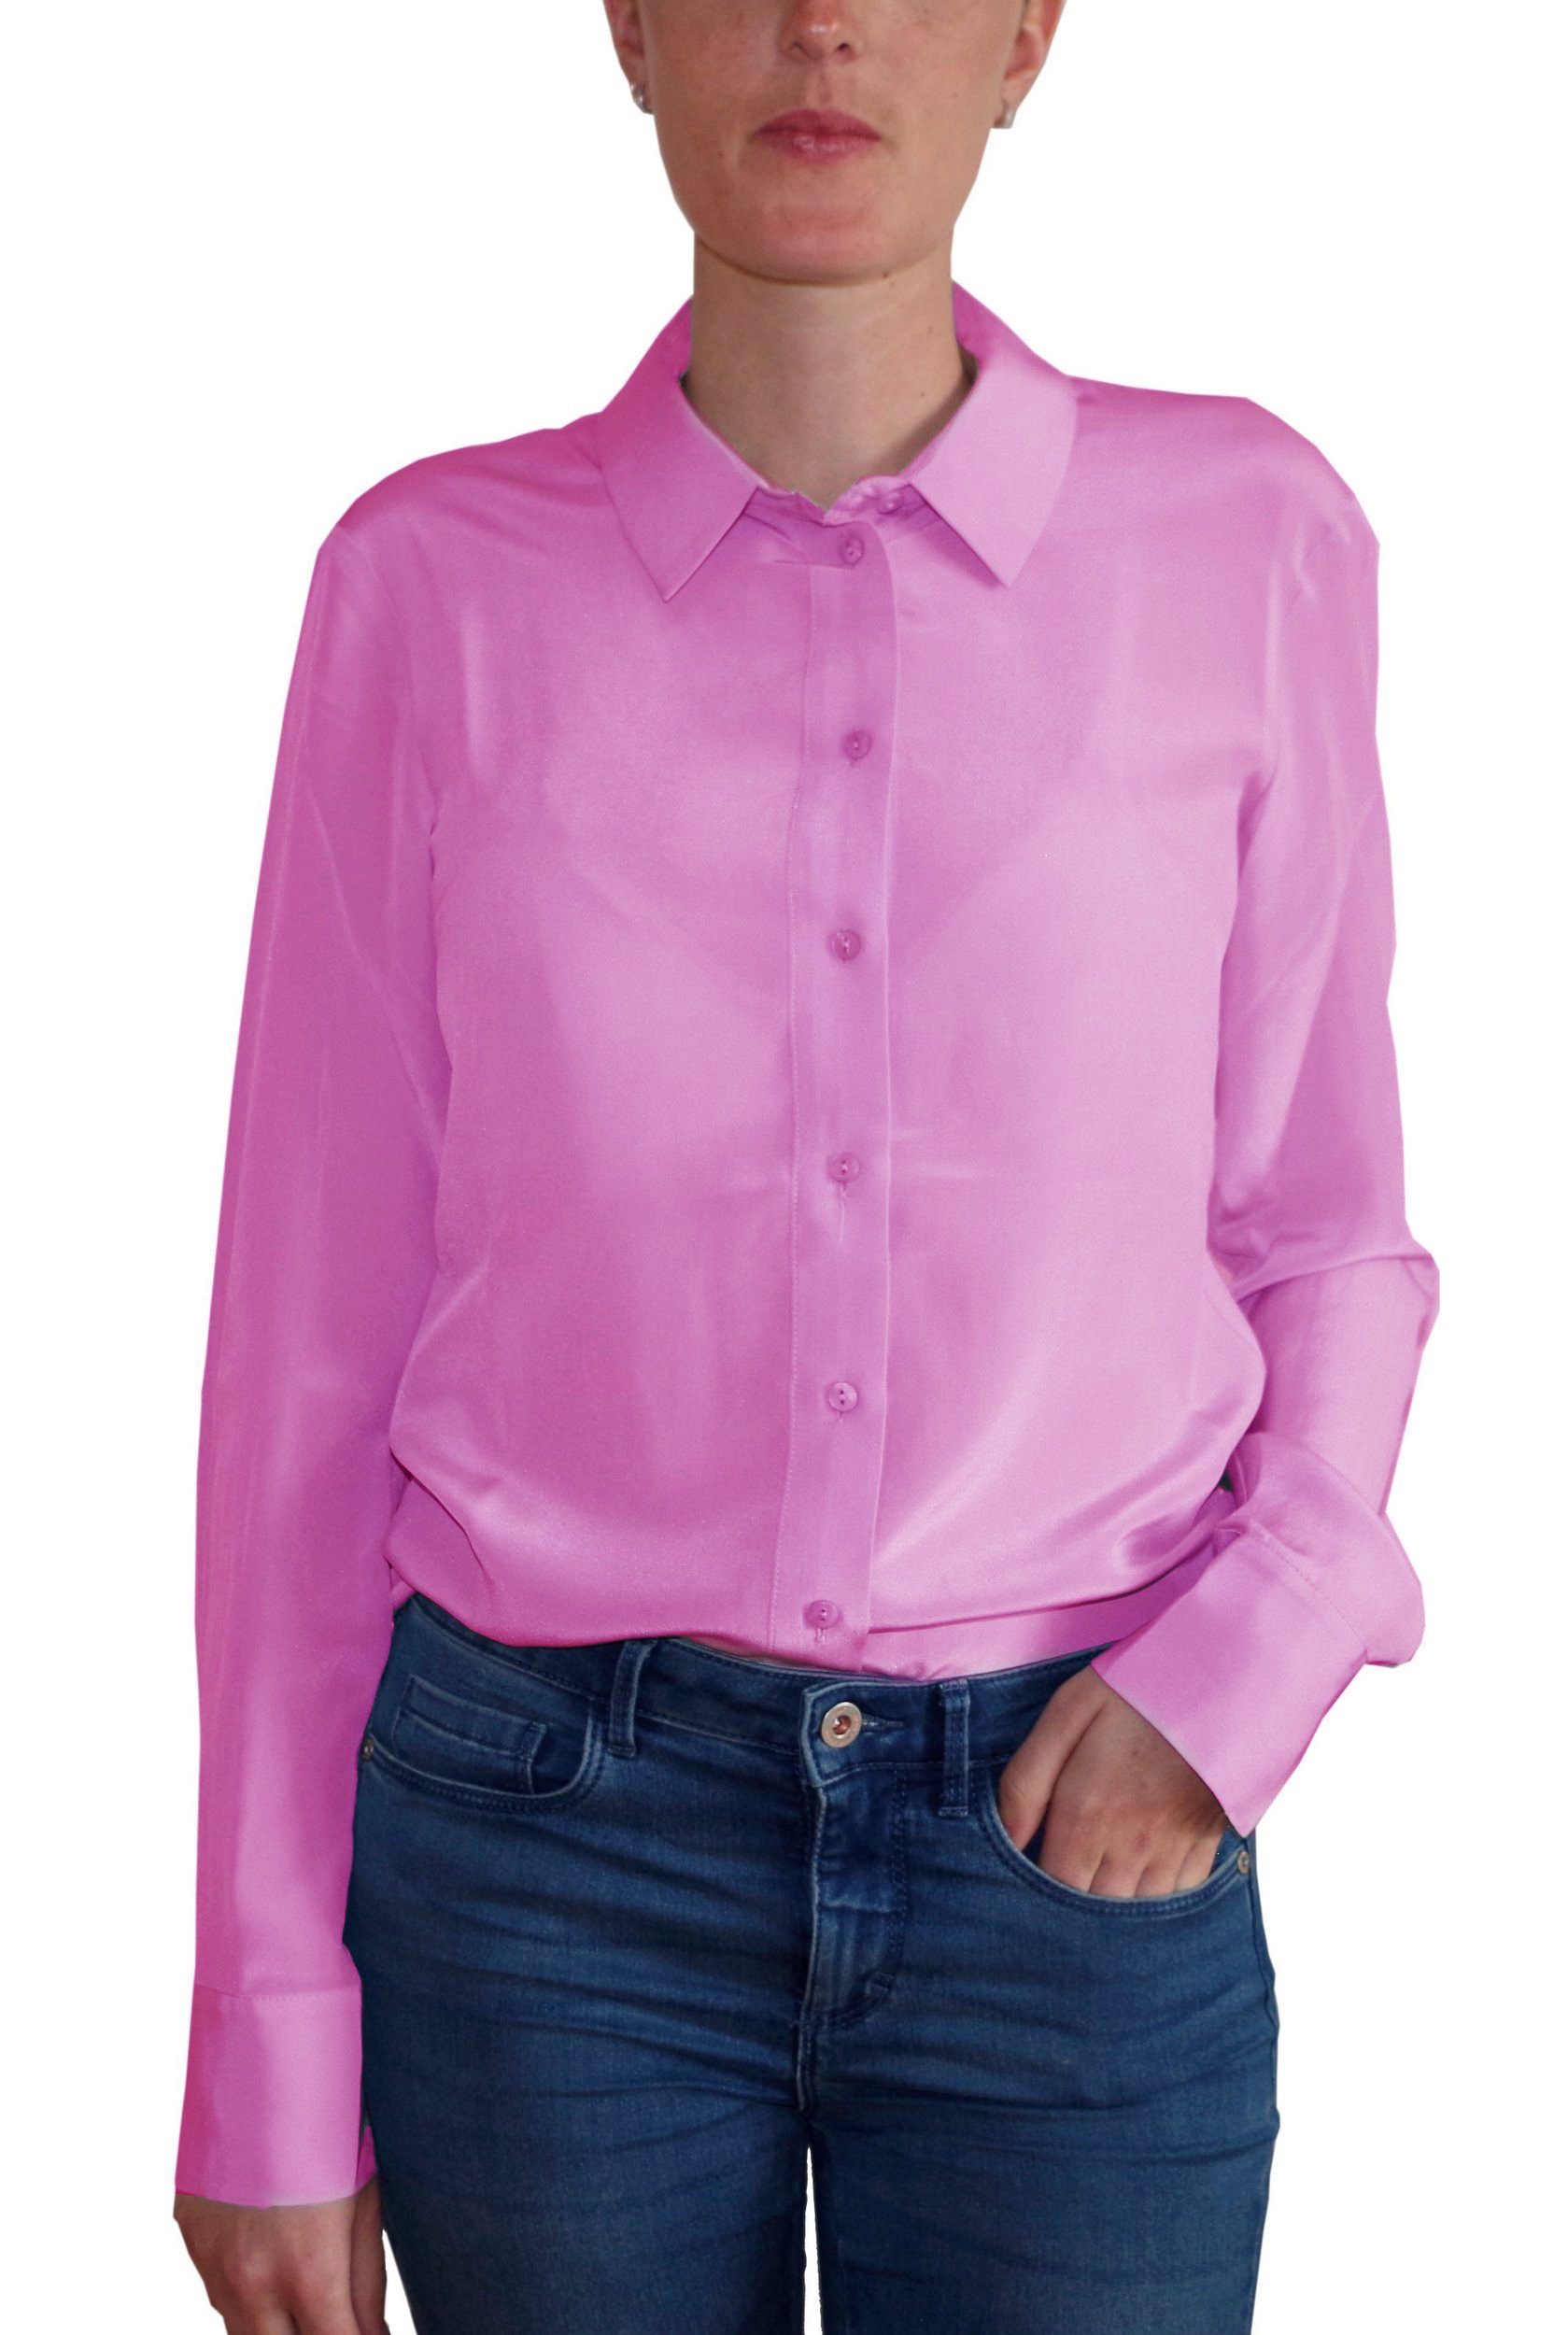 Posh Gear Seidenbluse Damen Seidenbluse Collettoseta Bluse aus 100% Seide 100% Seide rosa